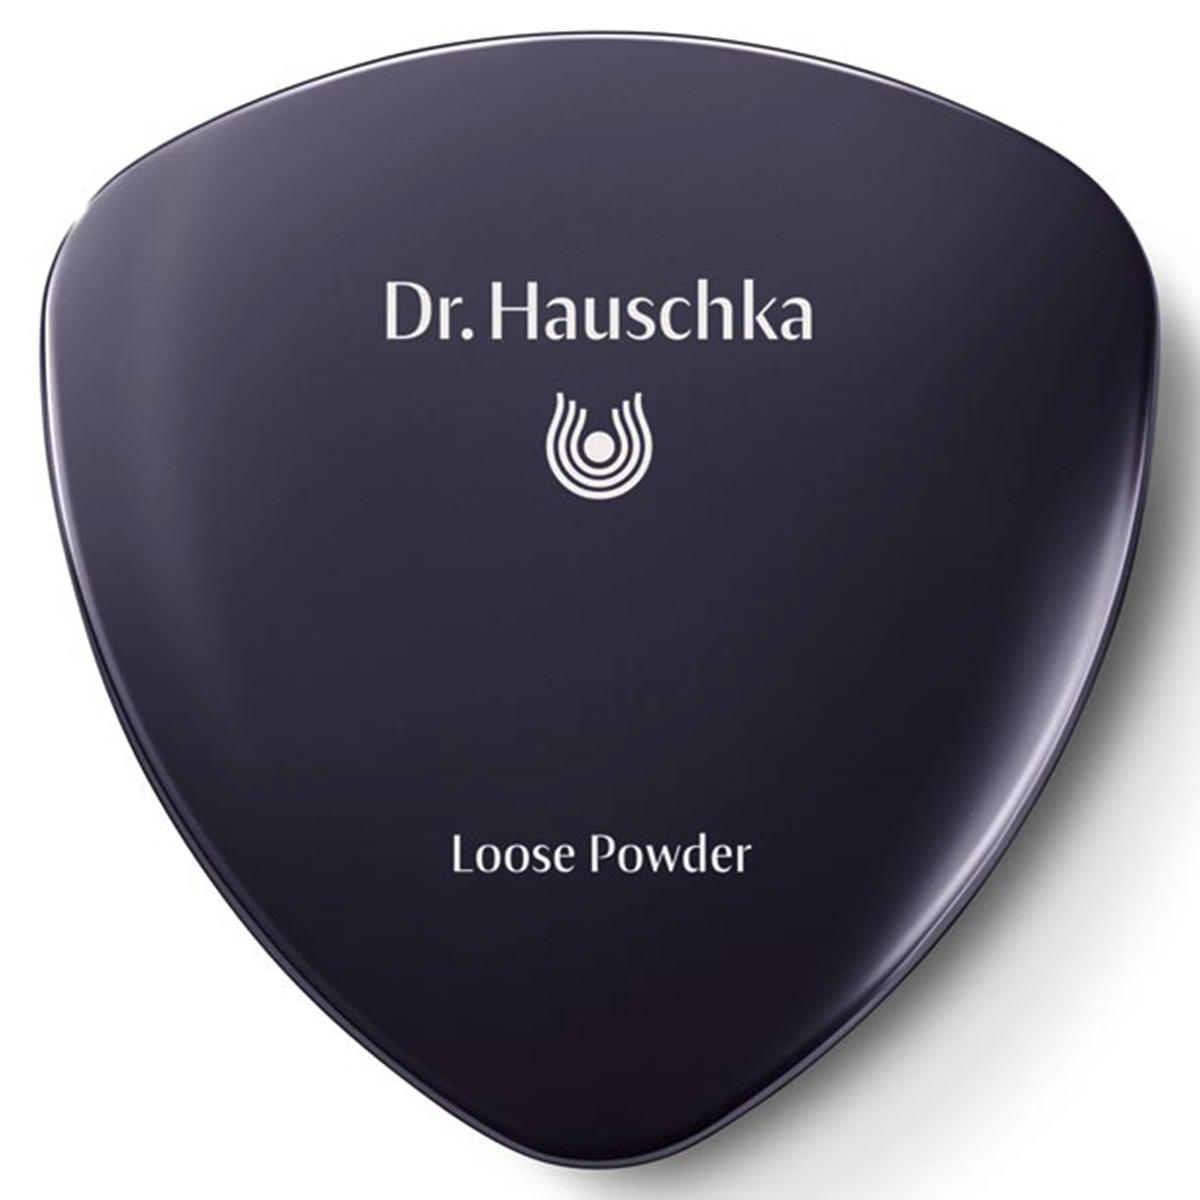 Dr. Hauschka Loose Powder 00 translucent, Inhalt 12 g - 3